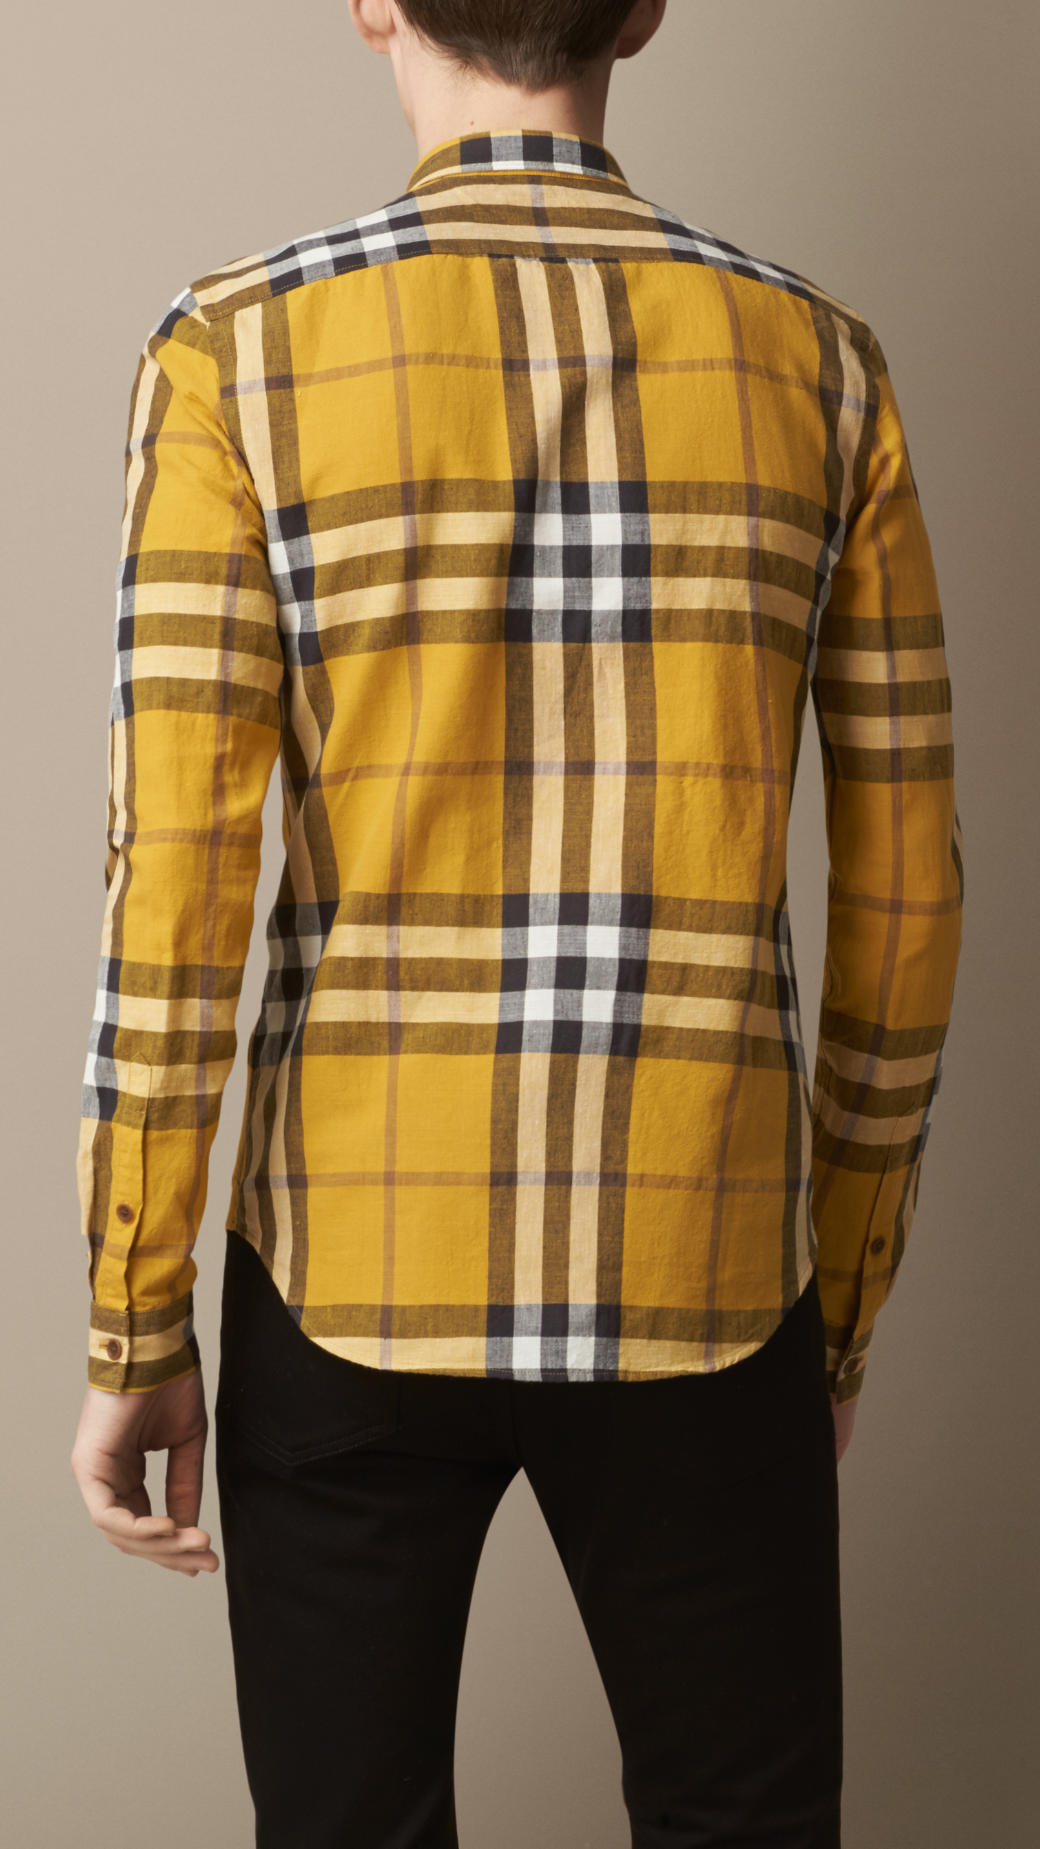 rigdom deadlock entreprenør Burberry Exploded Check Cotton Linen Shirt in Yellow for Men - Lyst